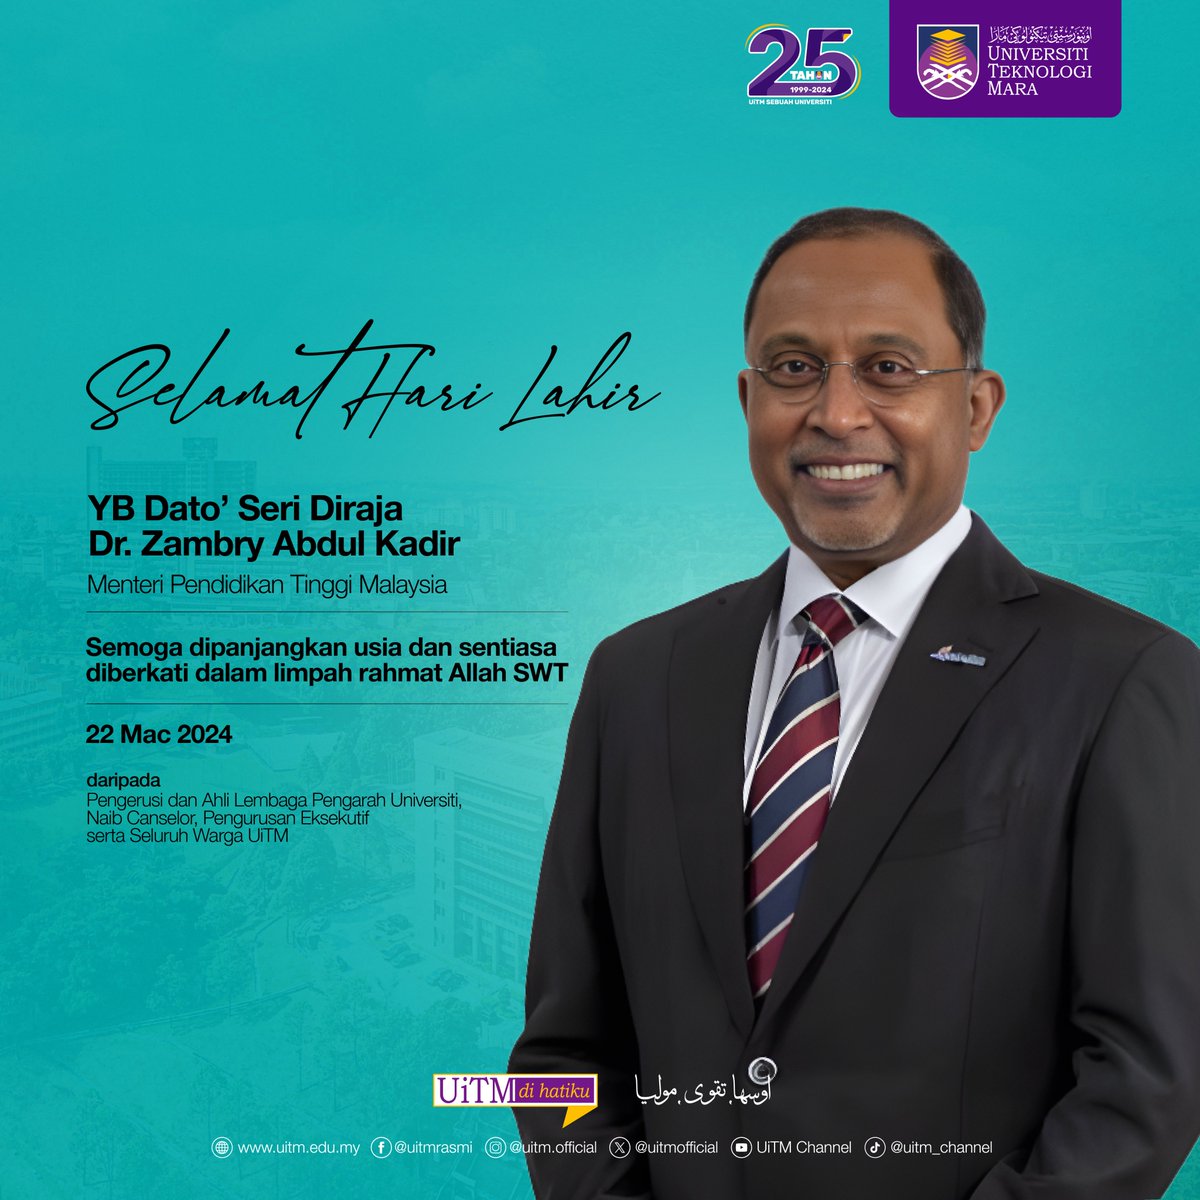 Universiti Teknologi MARA mengucapkan Selamat Hari Lahir kepada YB Dato' Seri Diraja Dr. Zambry Abd Kadir, Menteri Pendidikan Tinggi Malaysia. Semoga dikurniakan kesihatan dan sentiasa dirahmati Allah S.W.T Ikhlas daripada seluruh Warga UiTM #UiTM #UiTMDiHatiku #UiTM25Tahun